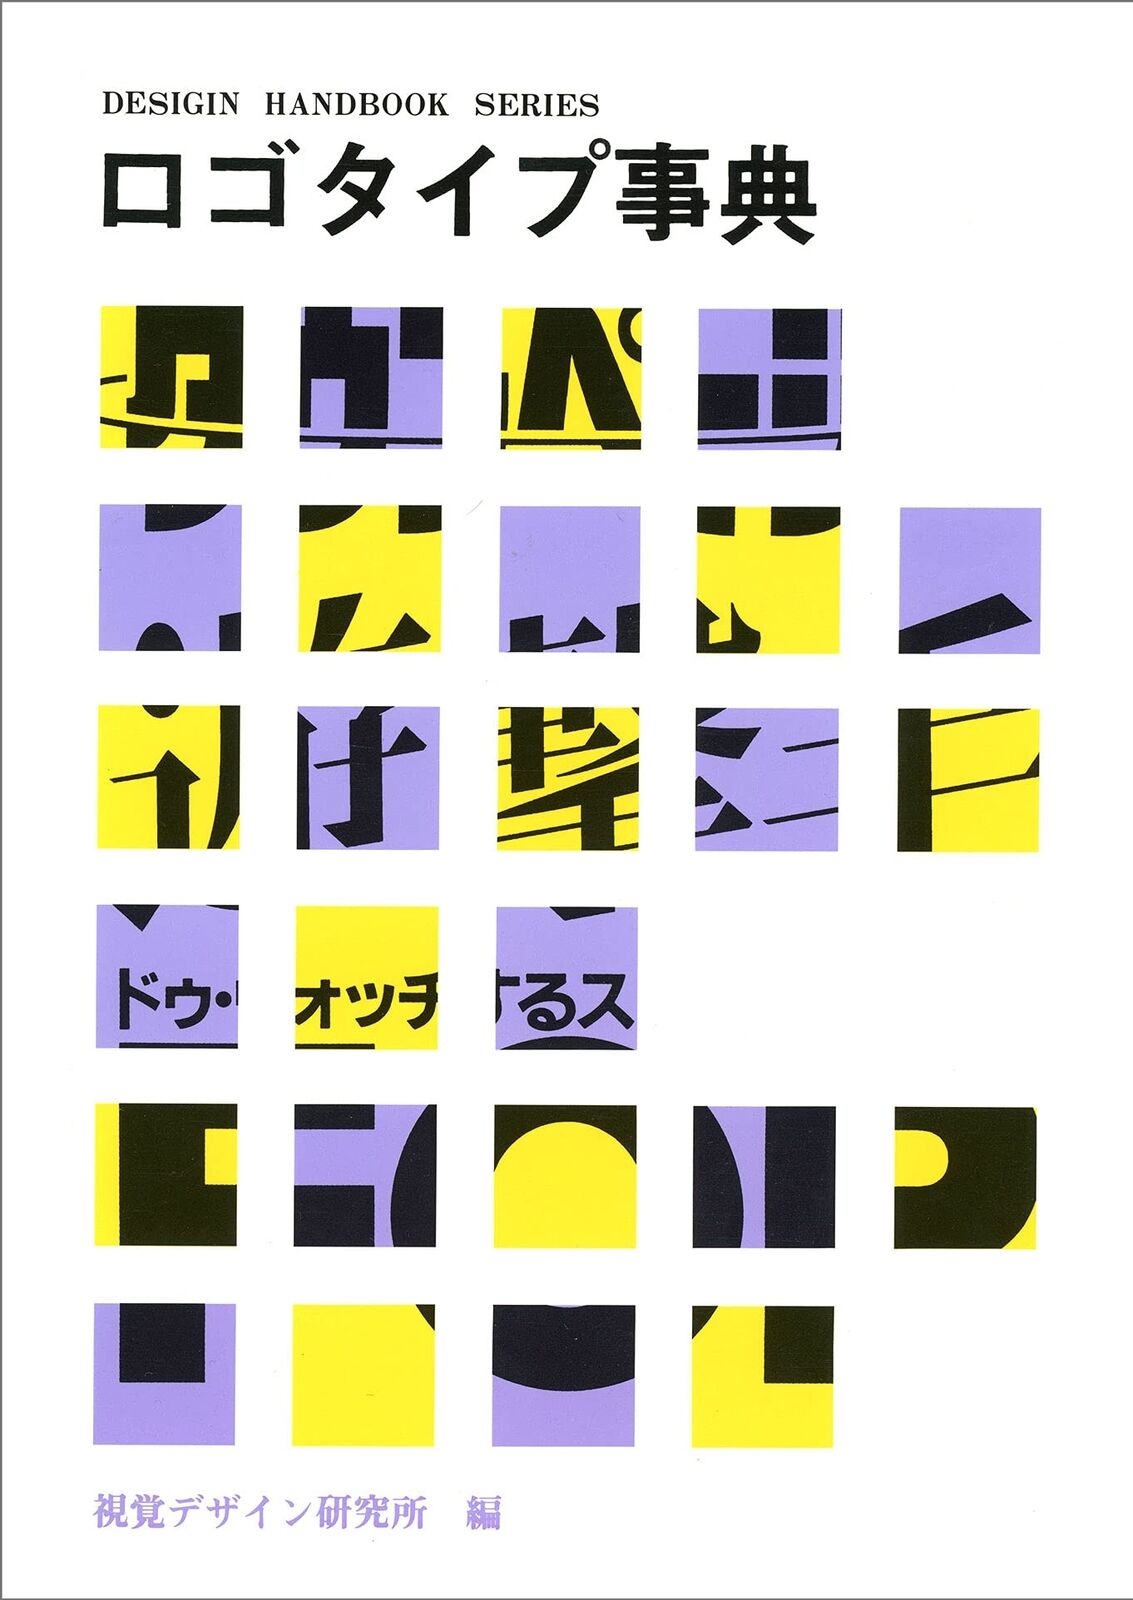 Japanese Logo Design Dictionary book, graphic mark emblem 1988